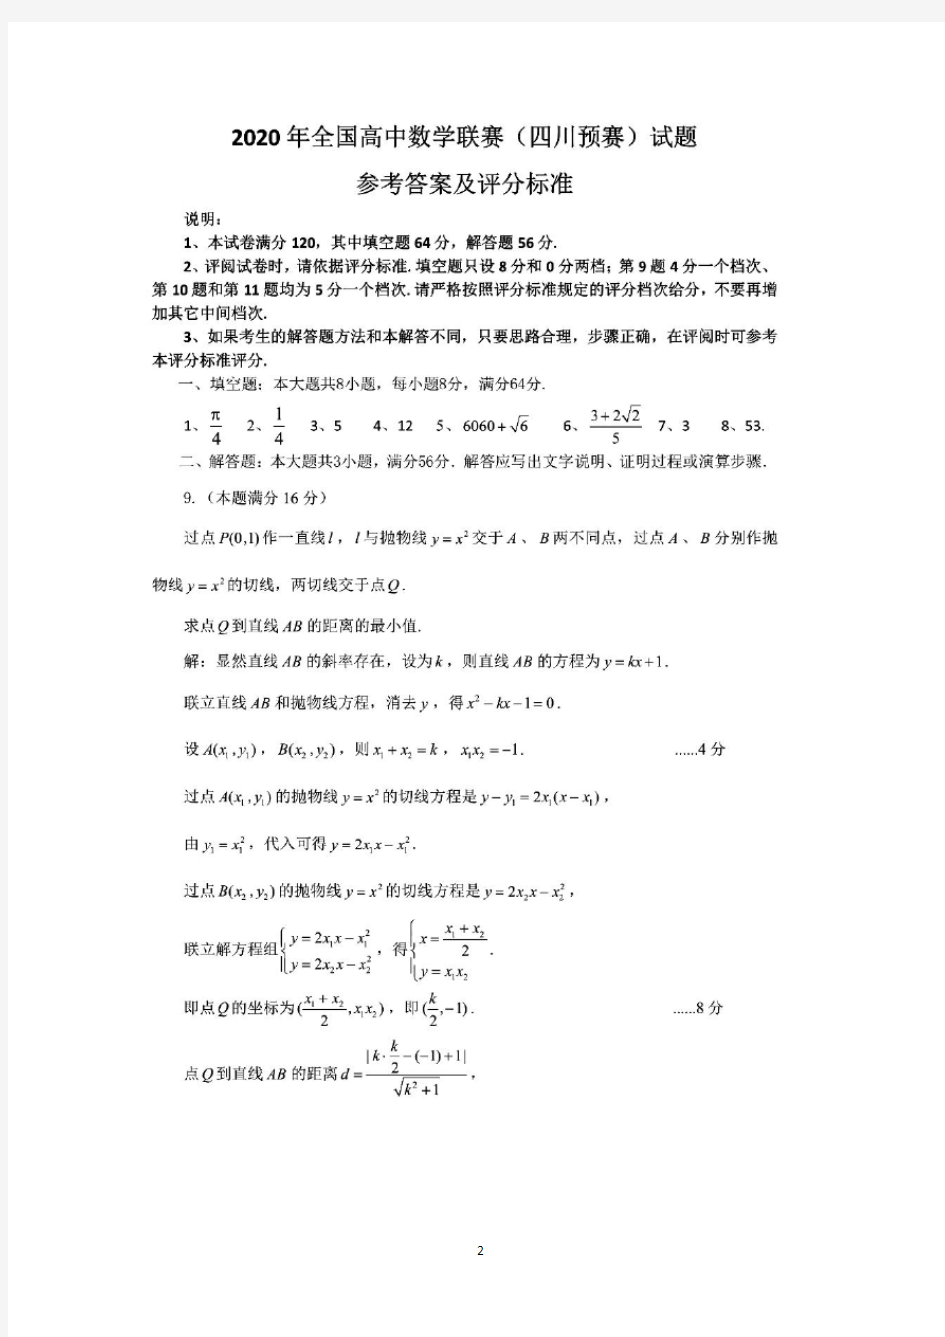 2020年四川省高中数学竞赛初赛试题及答案